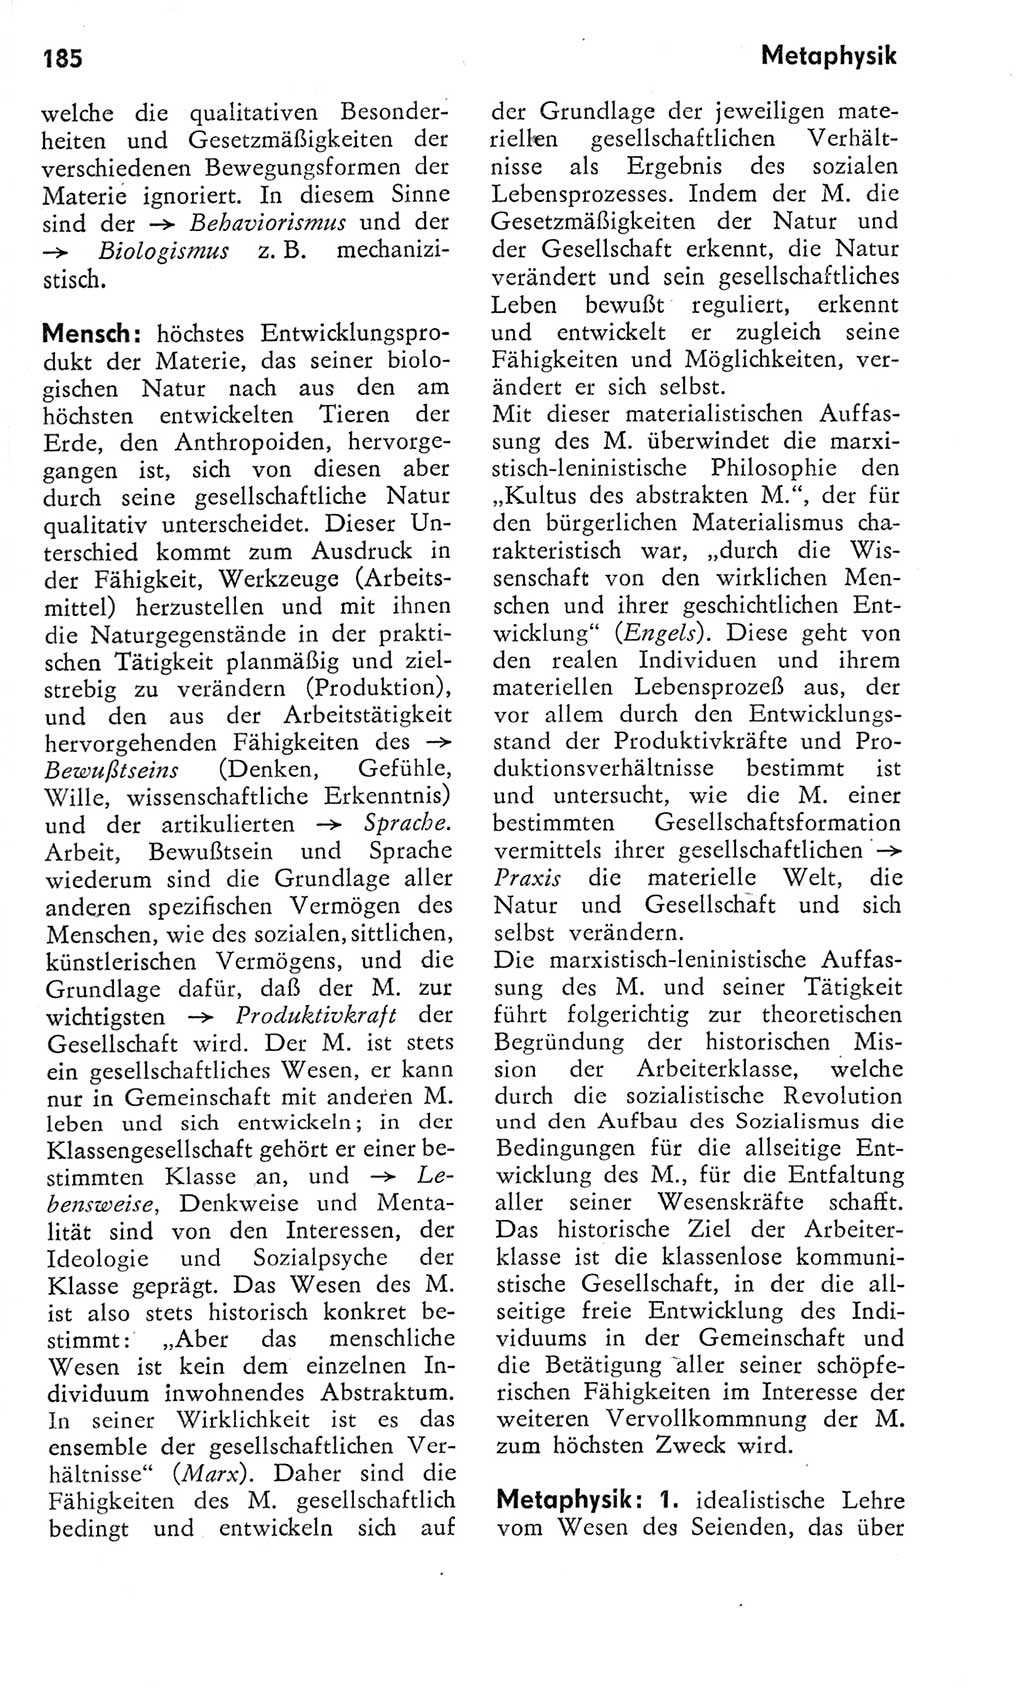 Kleines Wörterbuch der marxistisch-leninistischen Philosophie [Deutsche Demokratische Republik (DDR)] 1975, Seite 185 (Kl. Wb. ML Phil. DDR 1975, S. 185)